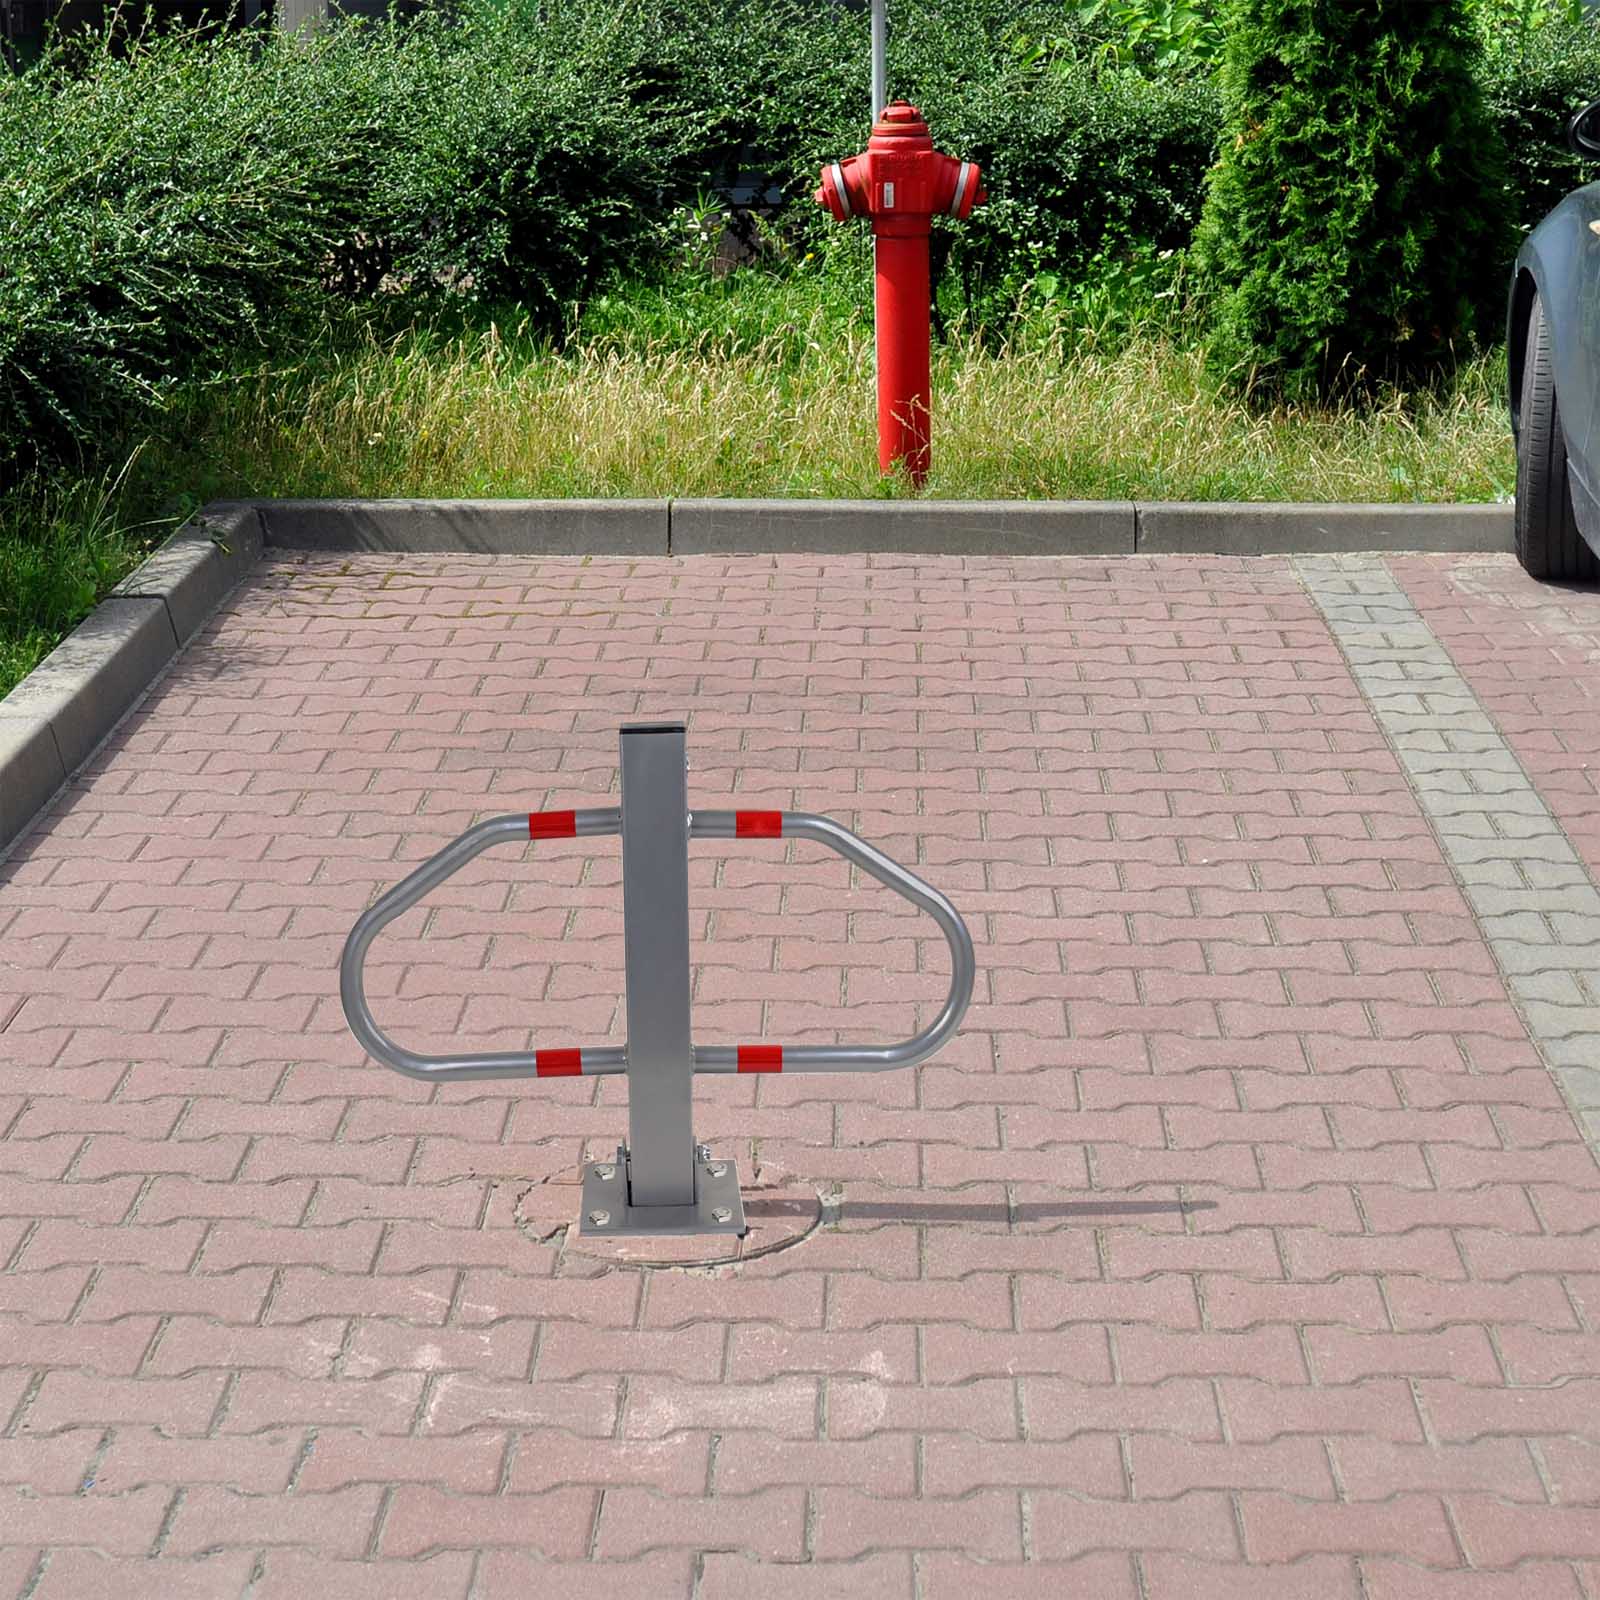 5x Barrera aparcamiento poste redono plegable altura 71 cm con bloqueo y  llaves